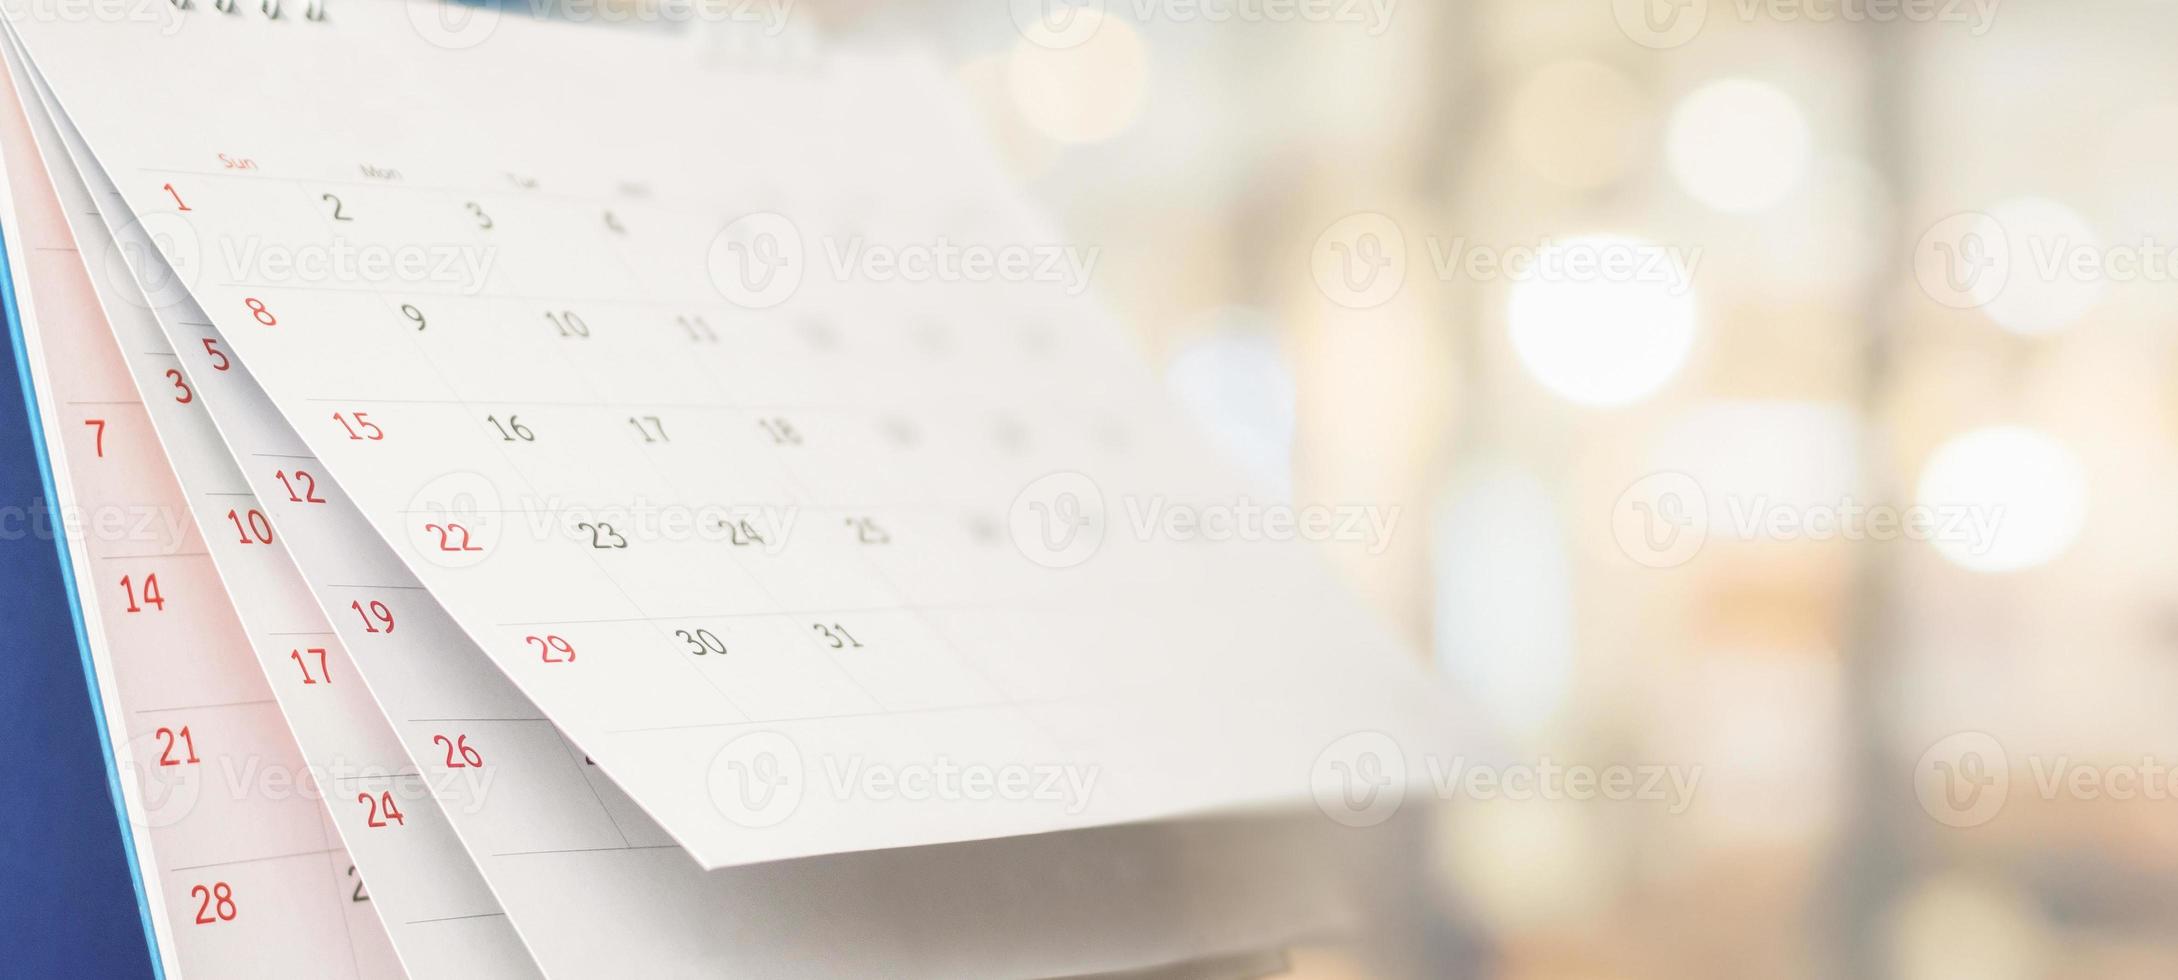 cierre el calendario de escritorio de papel blanco con el concepto de cita y reunión de negocios de fondo borroso foto